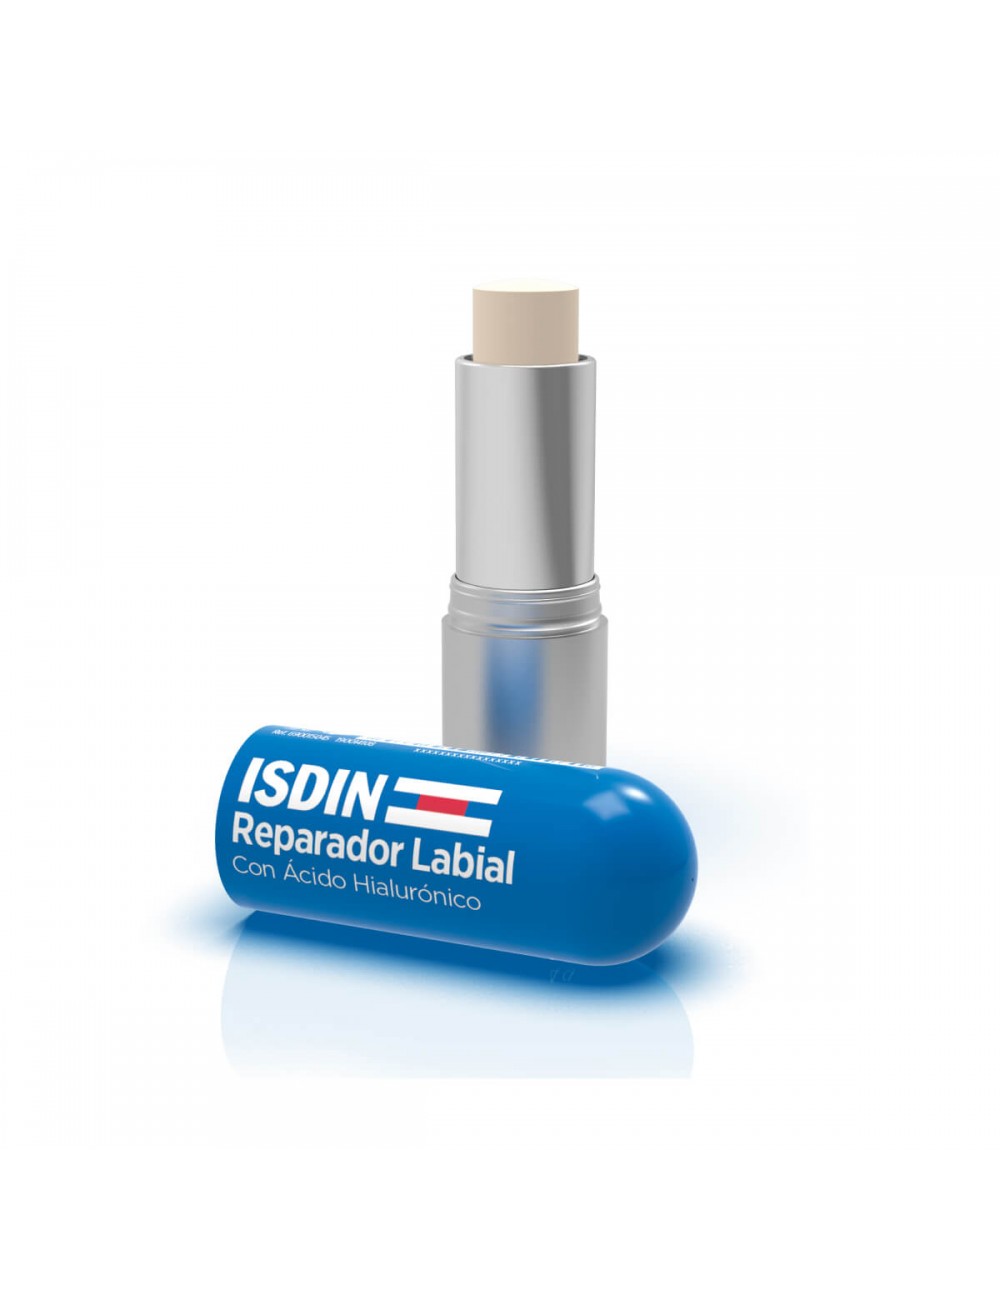 ❄Protege, repara e hidrata los labios con el reparador labial ISDIN con  ácido hialurónico., By ISDIN